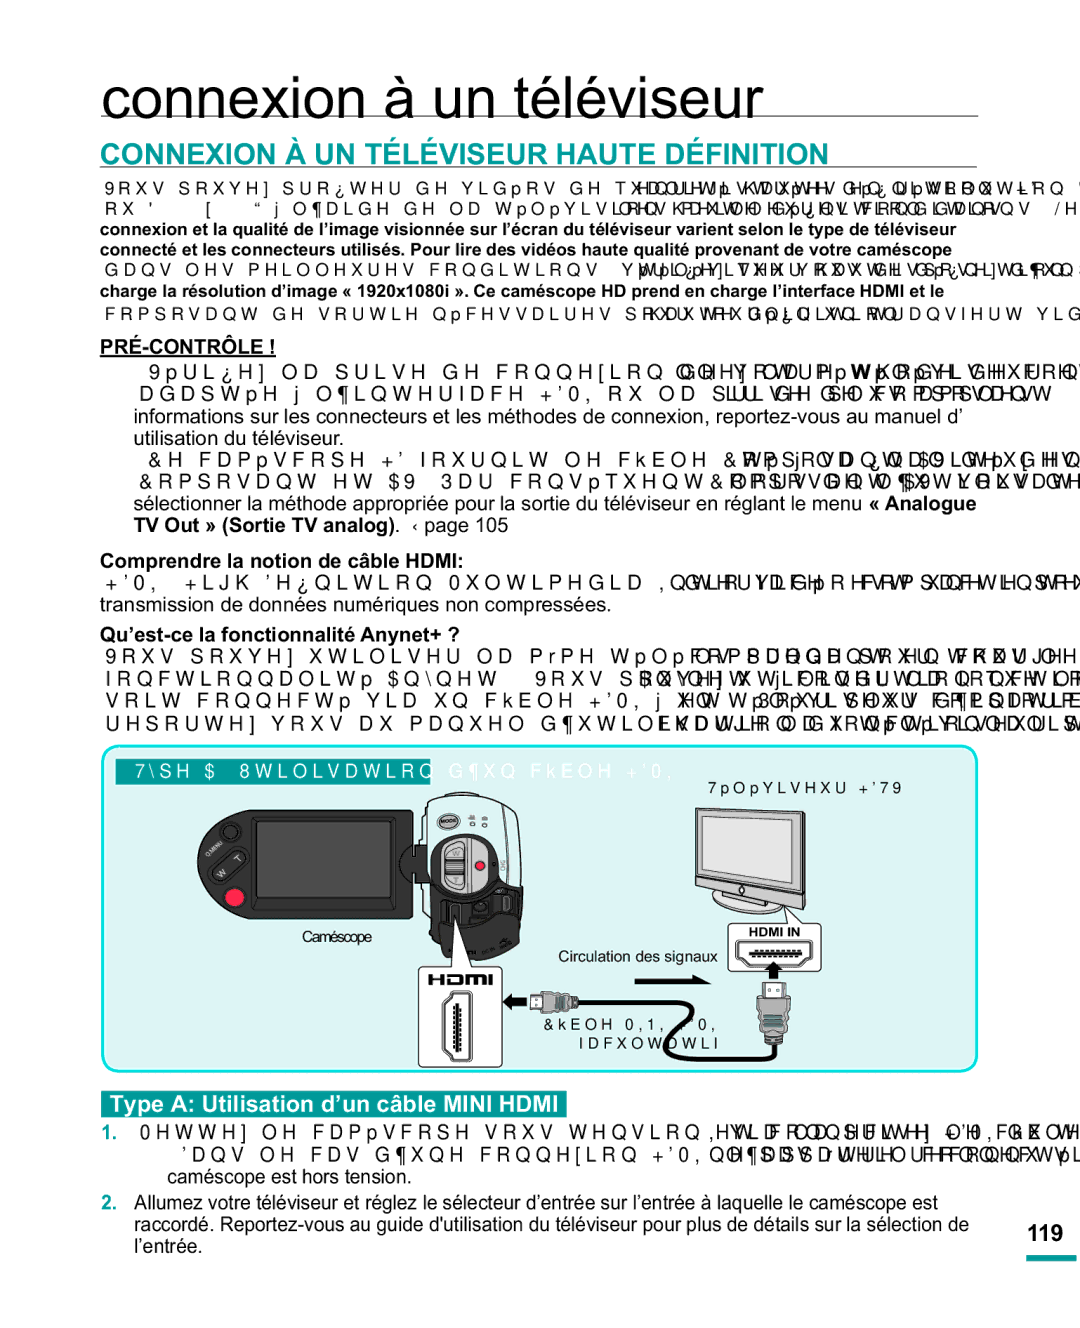 Samsung HMX-R10SP/EDC, HMX-R10BP/EDC Connexion à un téléviseur, Connexion À UN Téléviseur Haute Définition, 119, ’entrée 